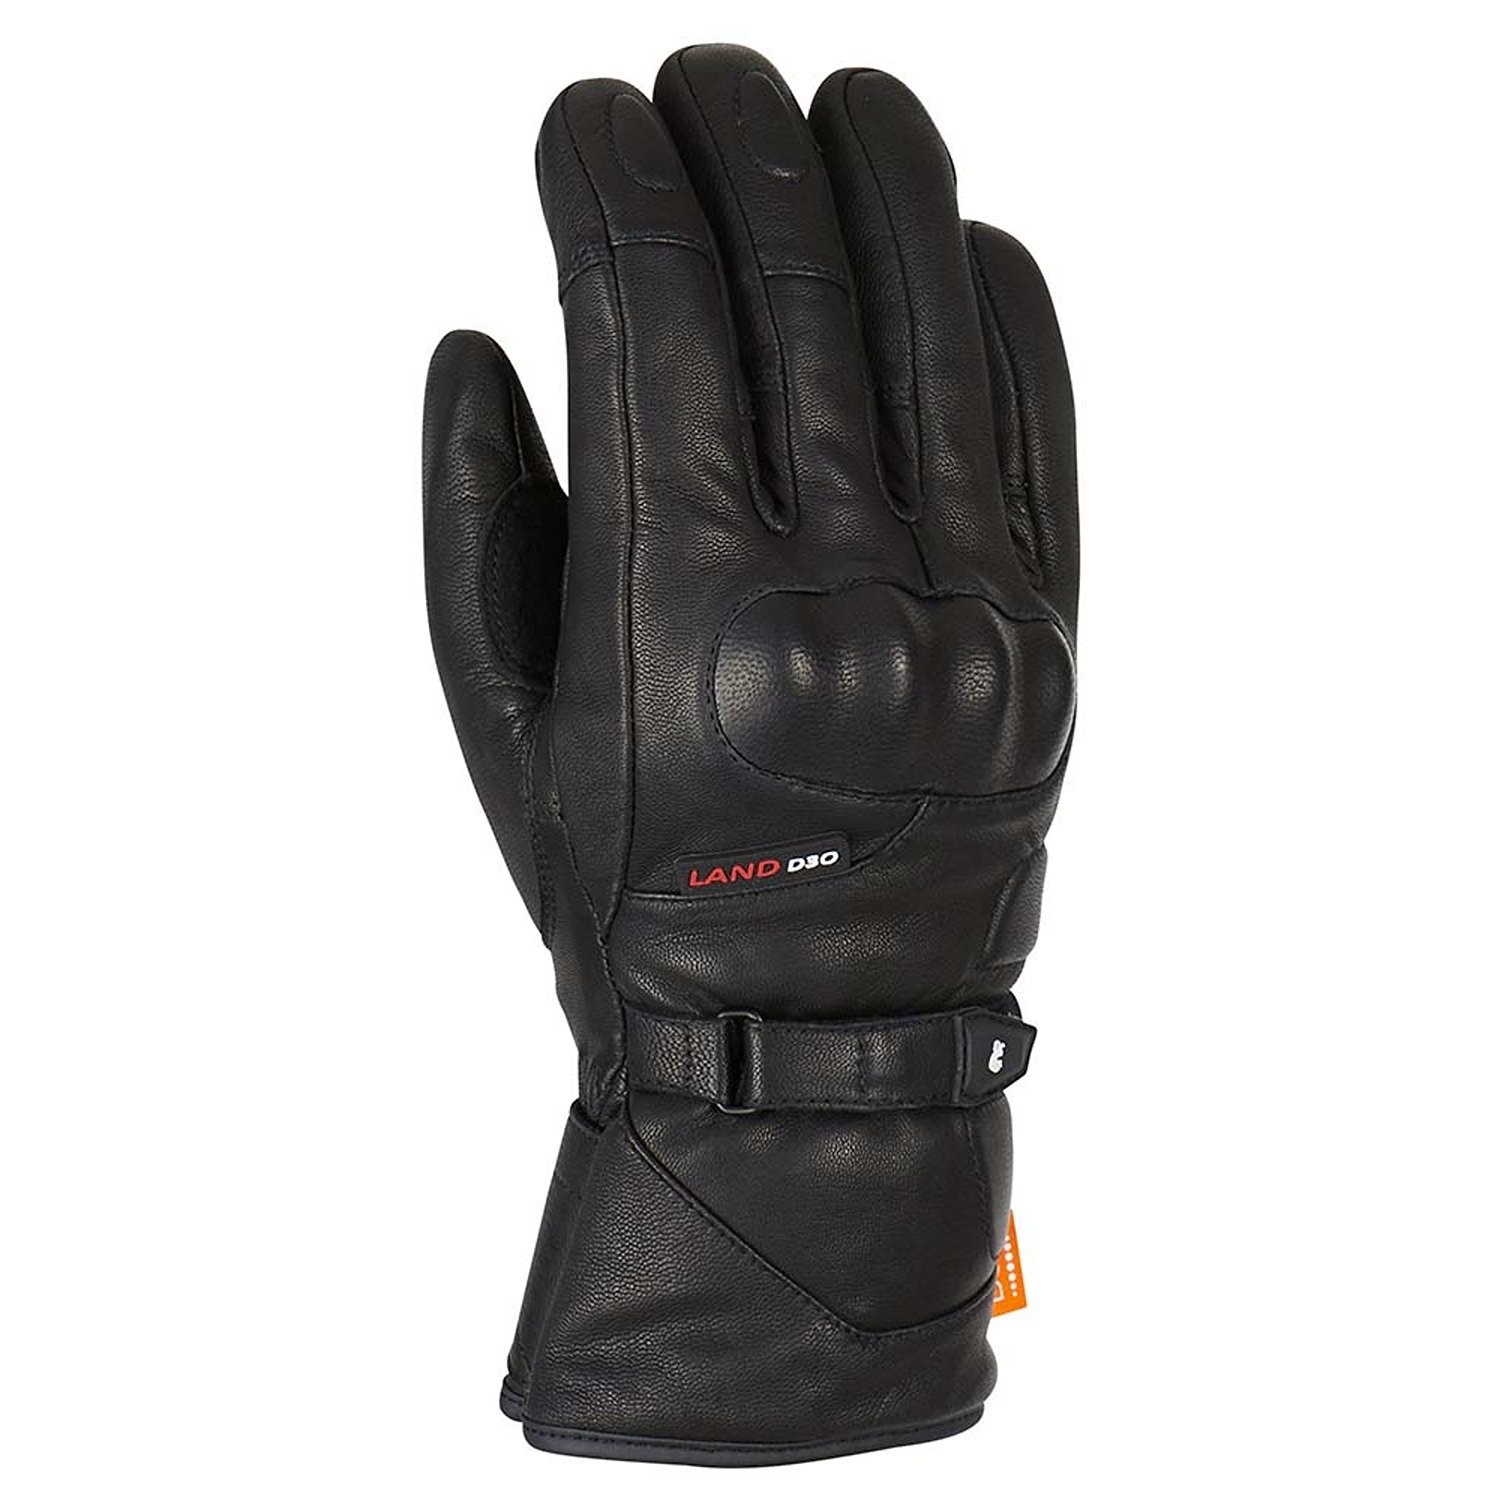 Image of Furygan Land DK D30 Gloves Black Size L EN